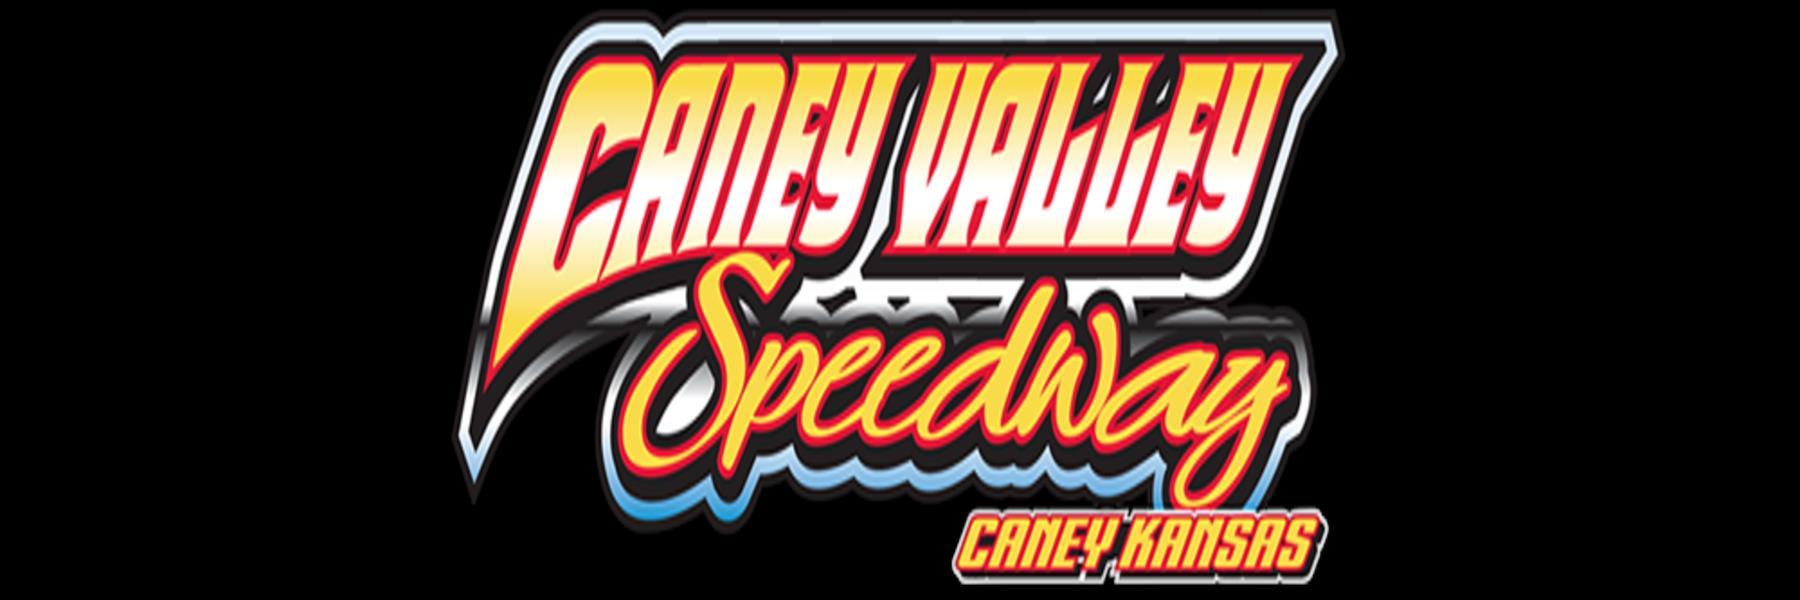 10/1/2022 - Caney Valley Speedway